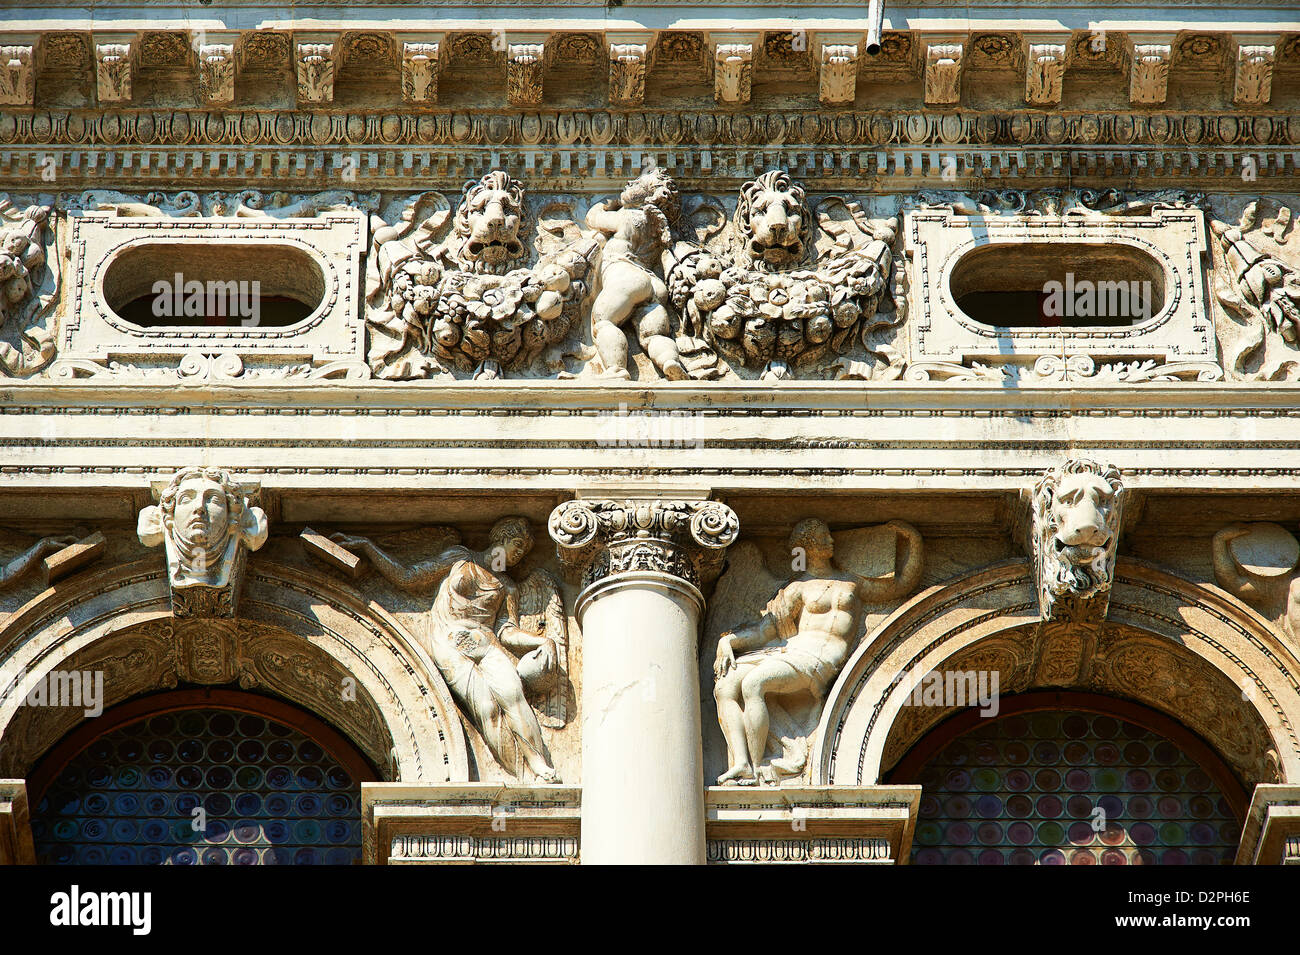 Biblioteca Nazionale Marciana Marciana (Biblioteca) de la plaza de San Marcos Venecia Foto de stock